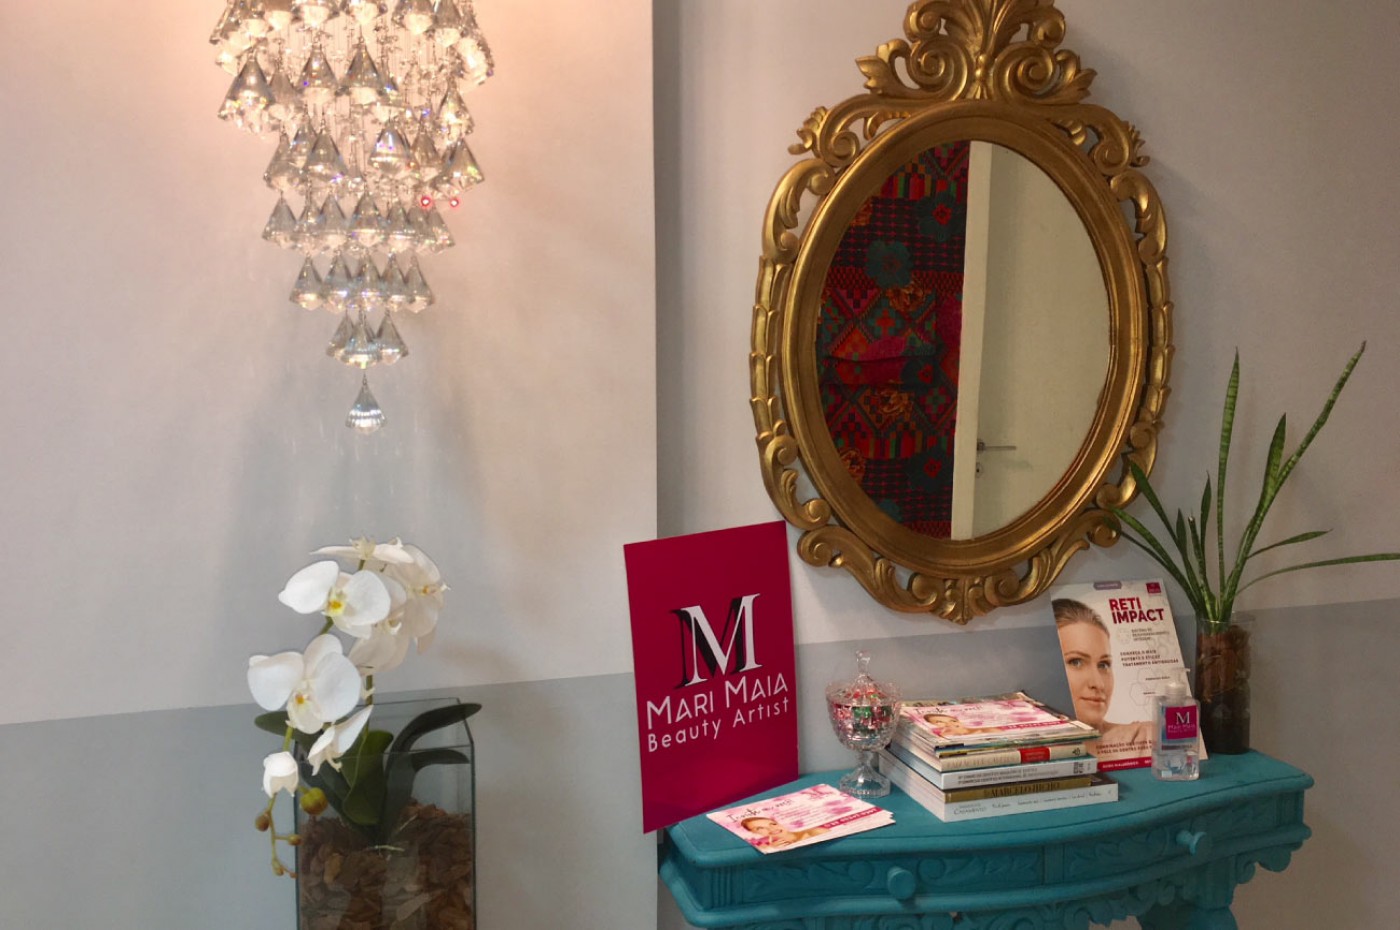 Mari Maia Beauty Artist | Le Monde Office